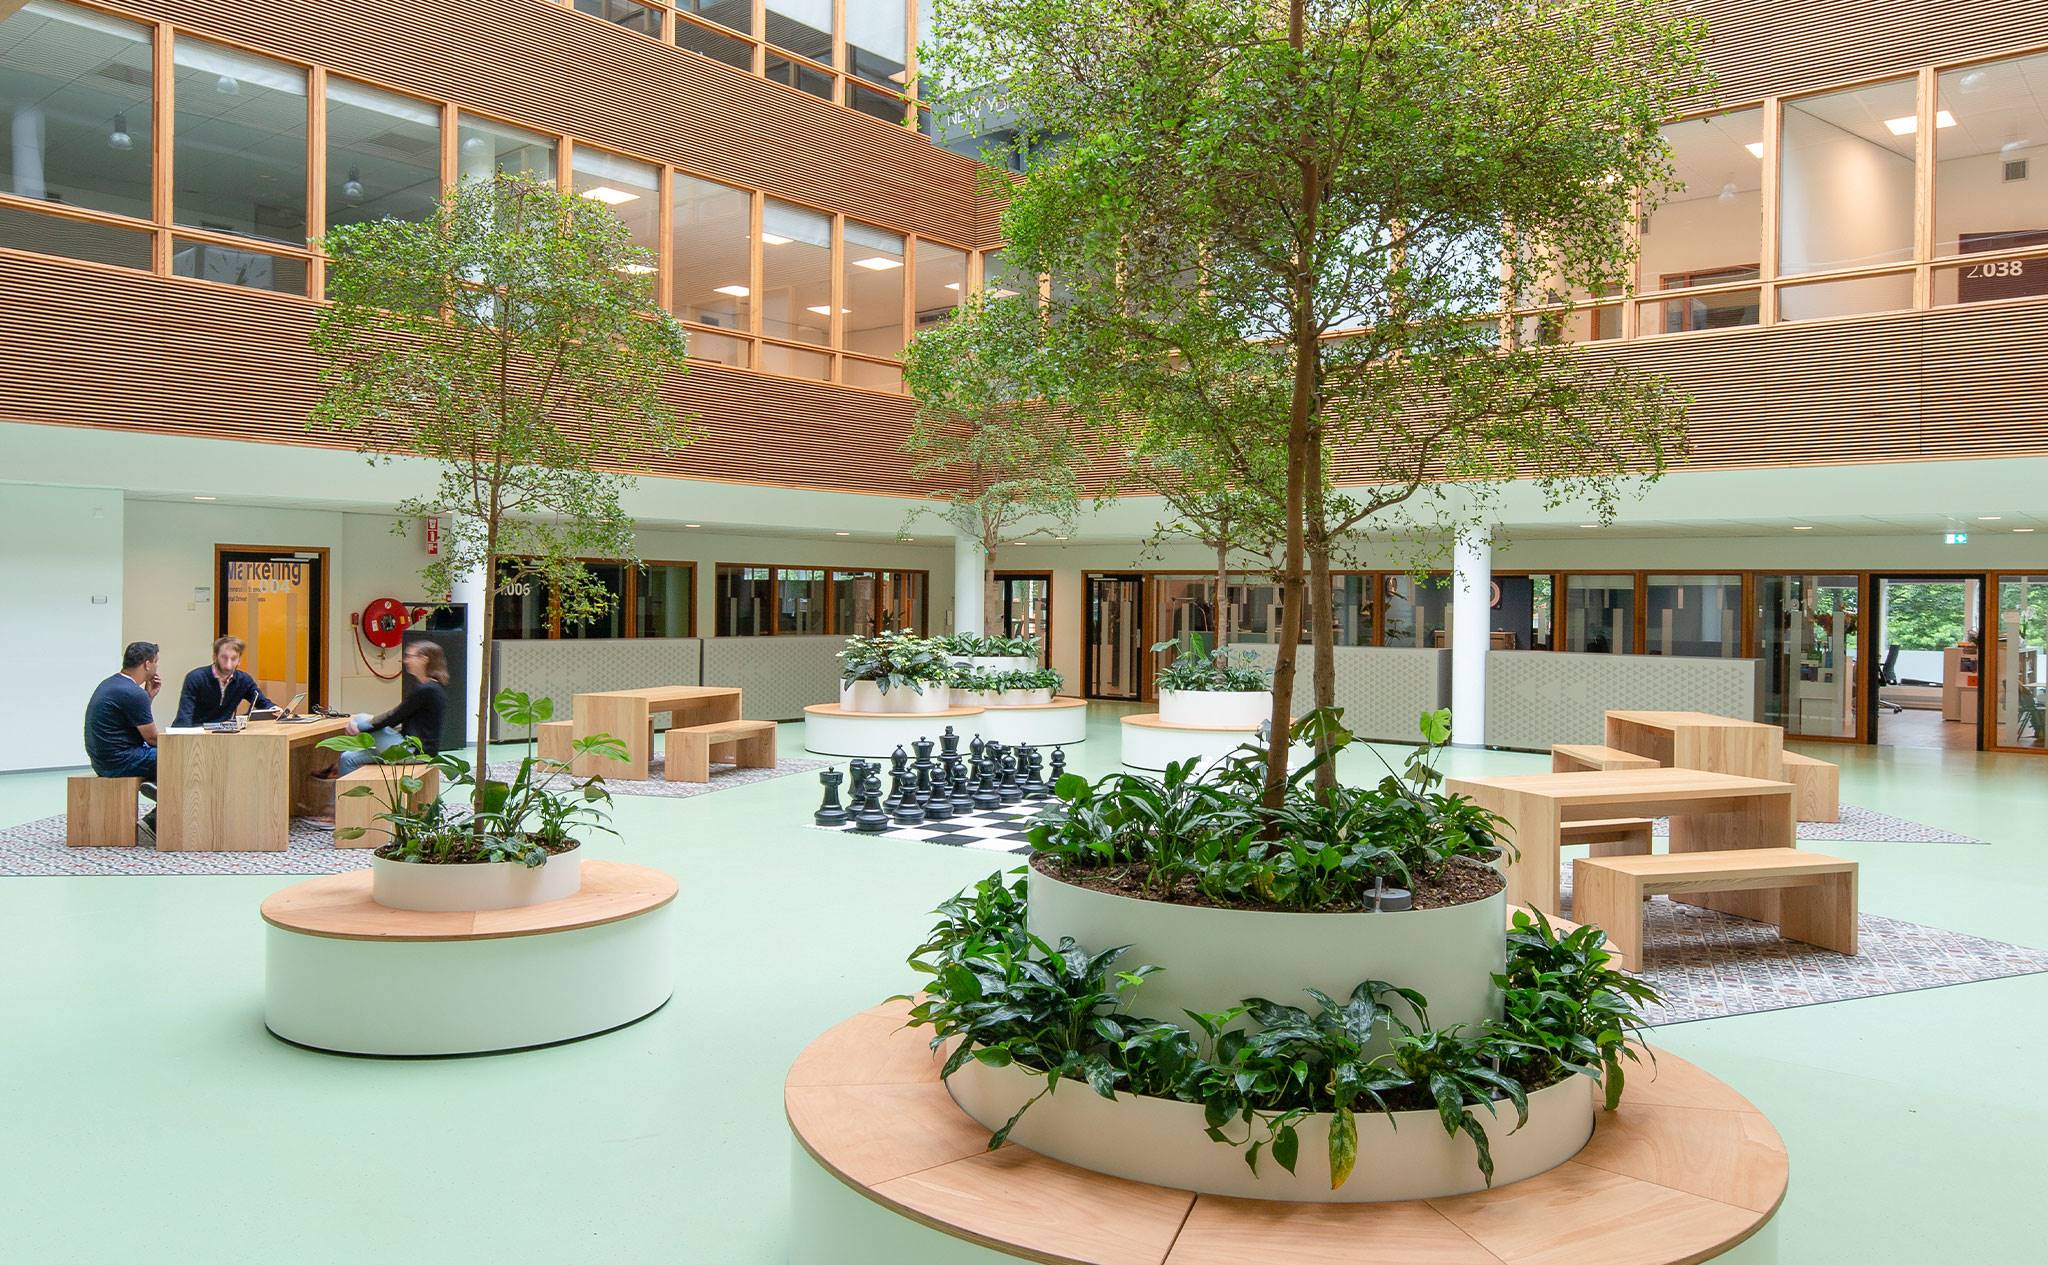 Hogeschool van Amsterdam, Fraijlemaborg - Om de frisse beleving binnen Fraijlemaborg compleet te maken, hebben wij meegedacht over een upgrade van het groen. 